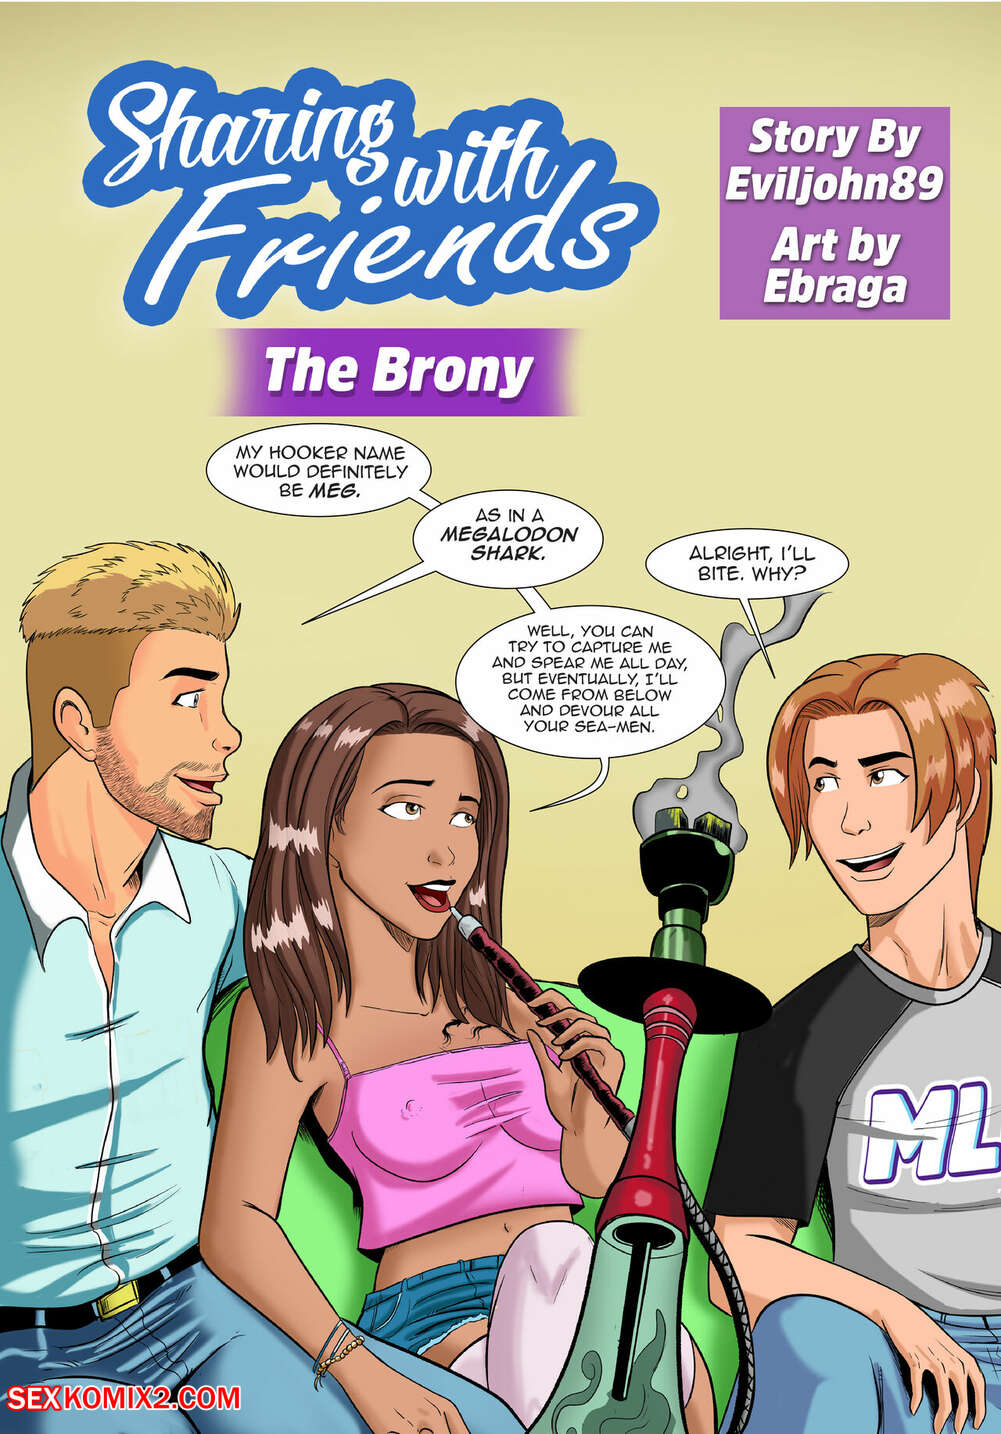 1001px x 1434px - âœ…ï¸ Porn comic Sharing with Friends. The Brony. Eviljohn89, Ebraga. Sex  comic busty brunette is | Porn comics in English for adults only |  sexkomix2.com